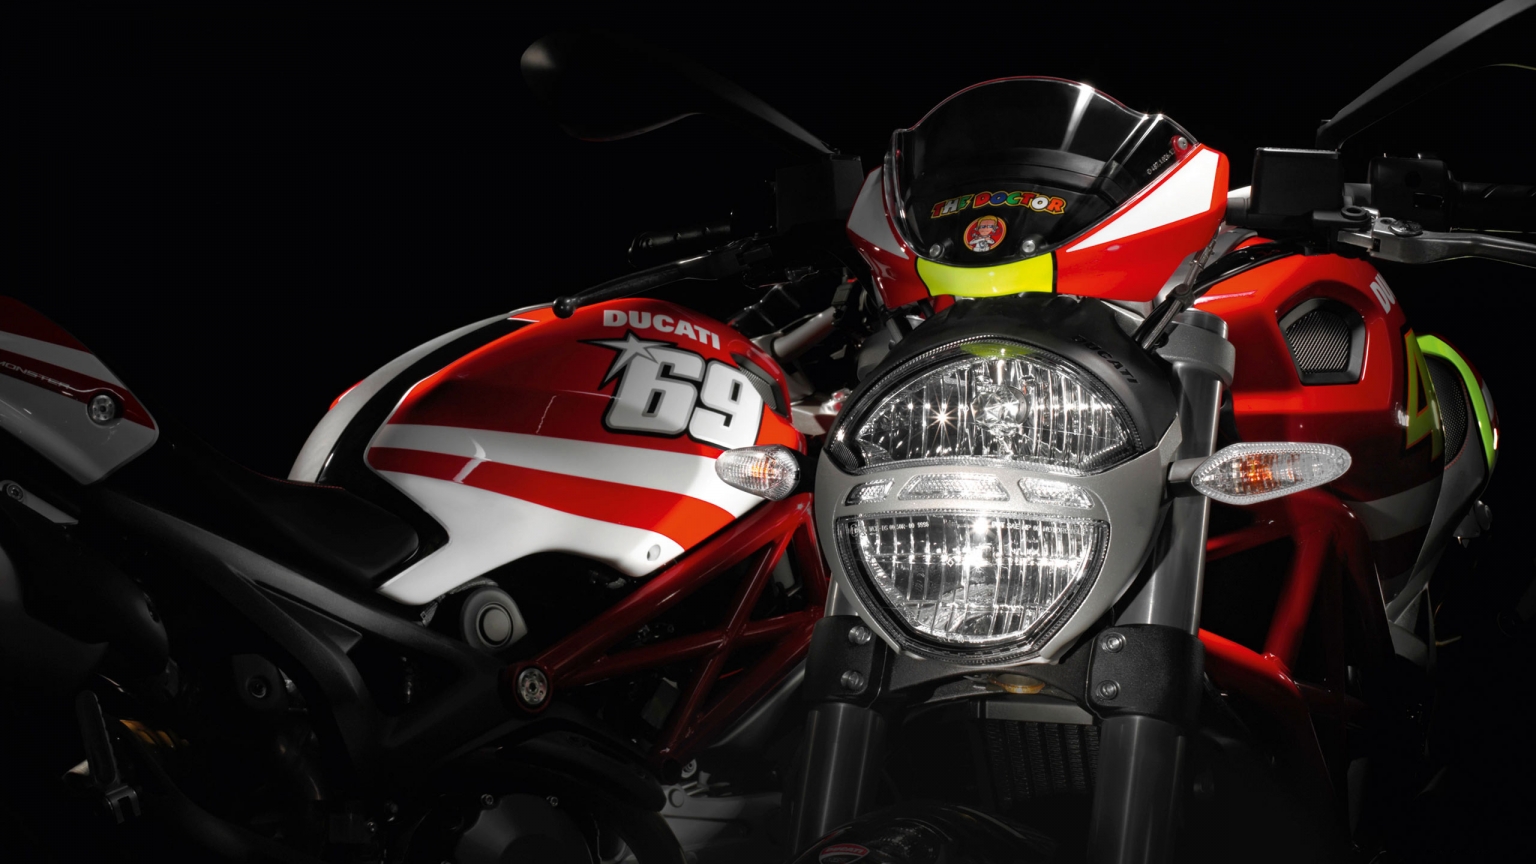 Ducati Rossi and Hayden Replica Ducati for 1536 x 864 HDTV resolution